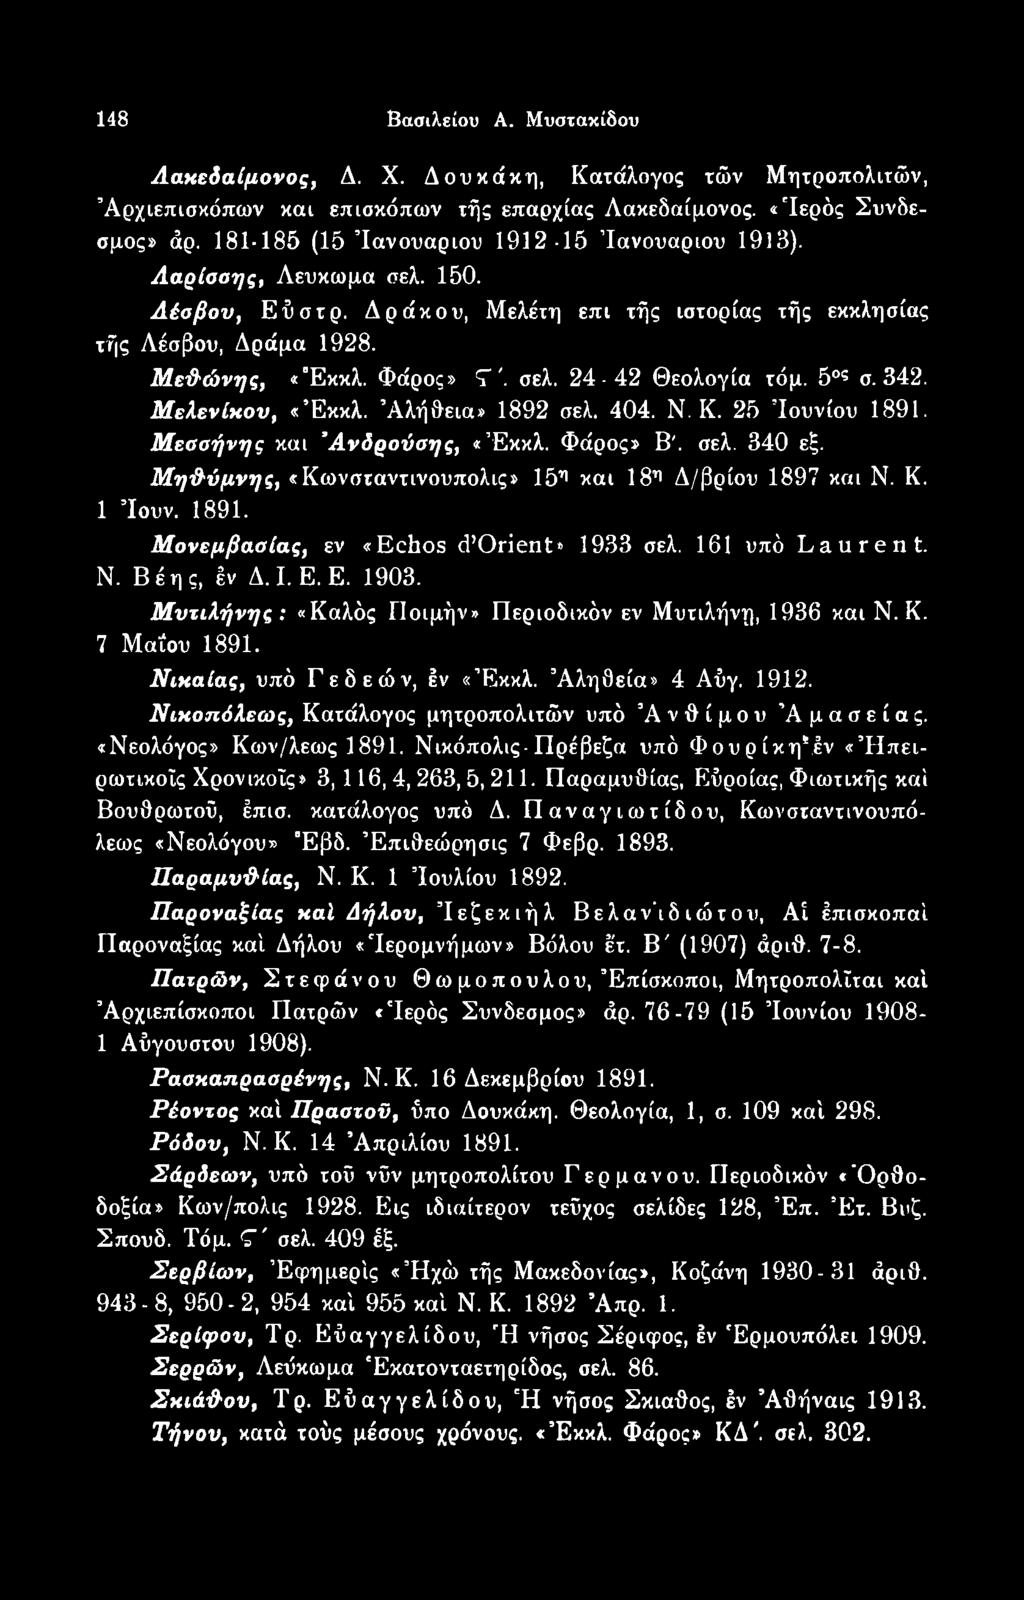 Νιχαίας, υπό Γεδεών, έν «Έκκλ. Άληθεία» 4 Αύγ. 1912. Νιχοπόλεως, Κατάλογος μητροπολιτών υπό Ανθίμου Άμασείας. «Νεολόγος» Κων/λεως 1891.